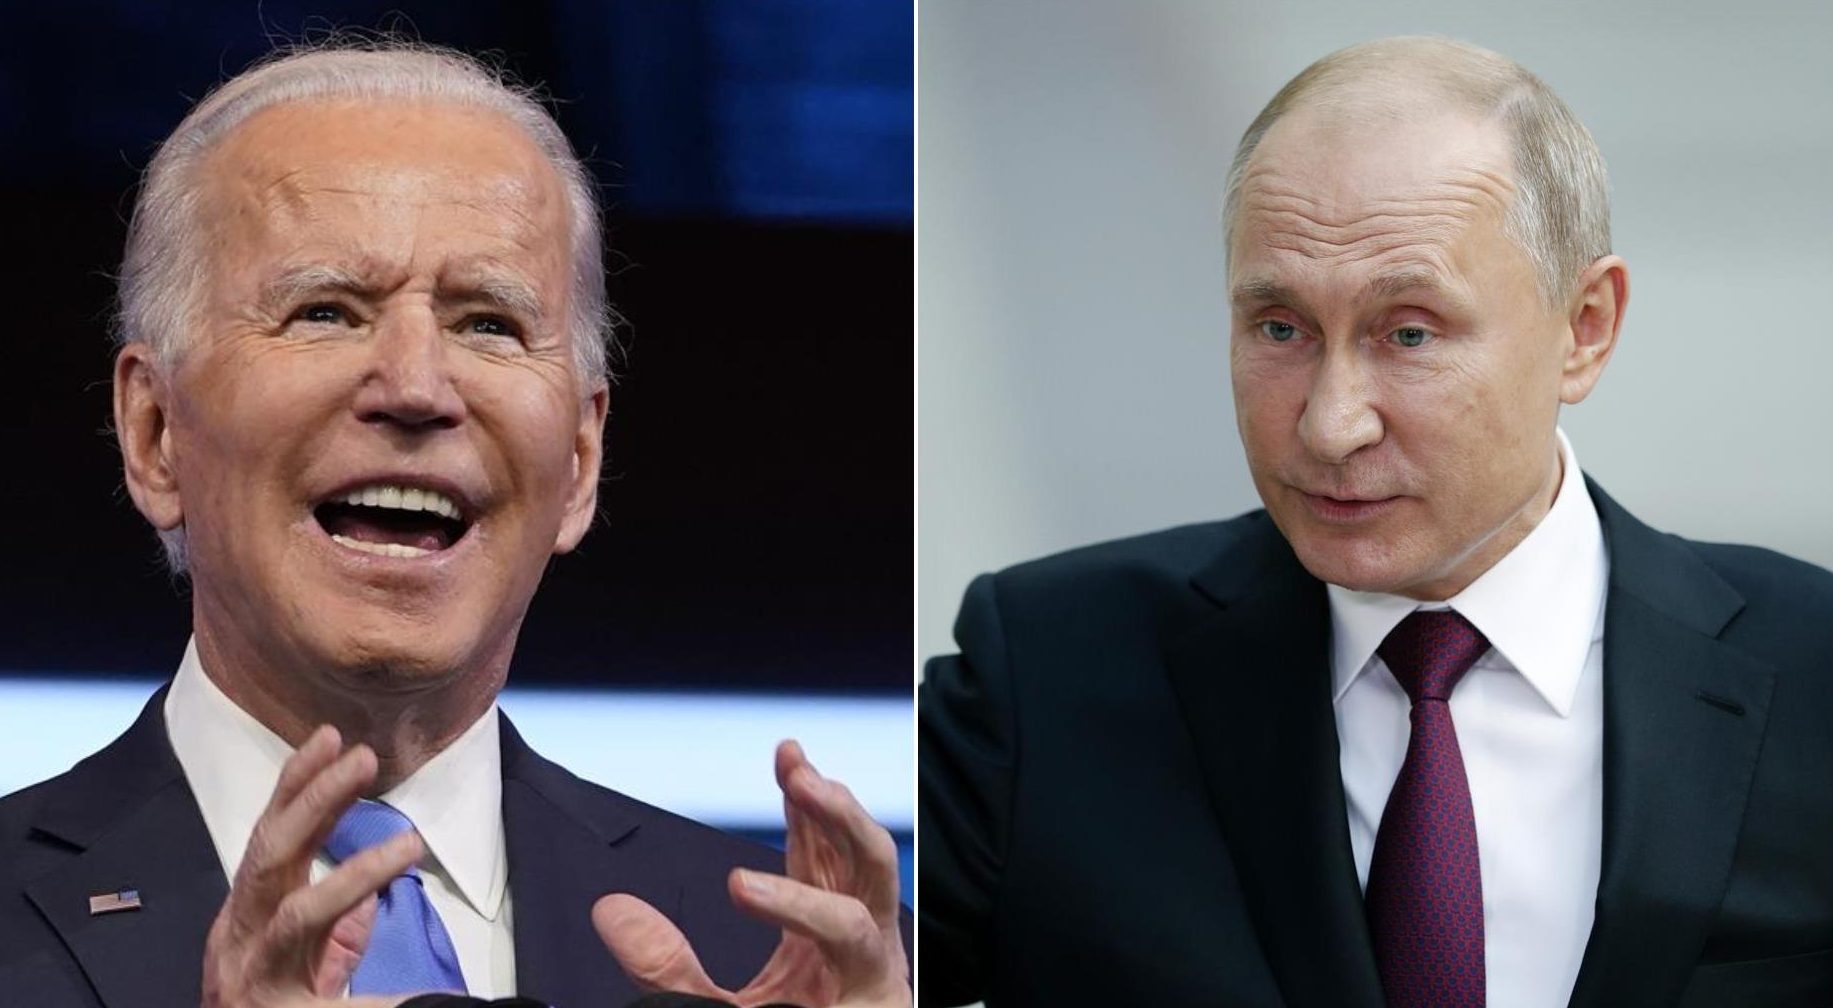 تتزايد حدة التصريحات بين روسيا وأمريكا، التي تُنذر بتوتر أكبر. ويأتي ذلك بعد وصف الرئيس الأمريكي (جو بايدن) رئيس روسيا بوتين "بالقاتل" .